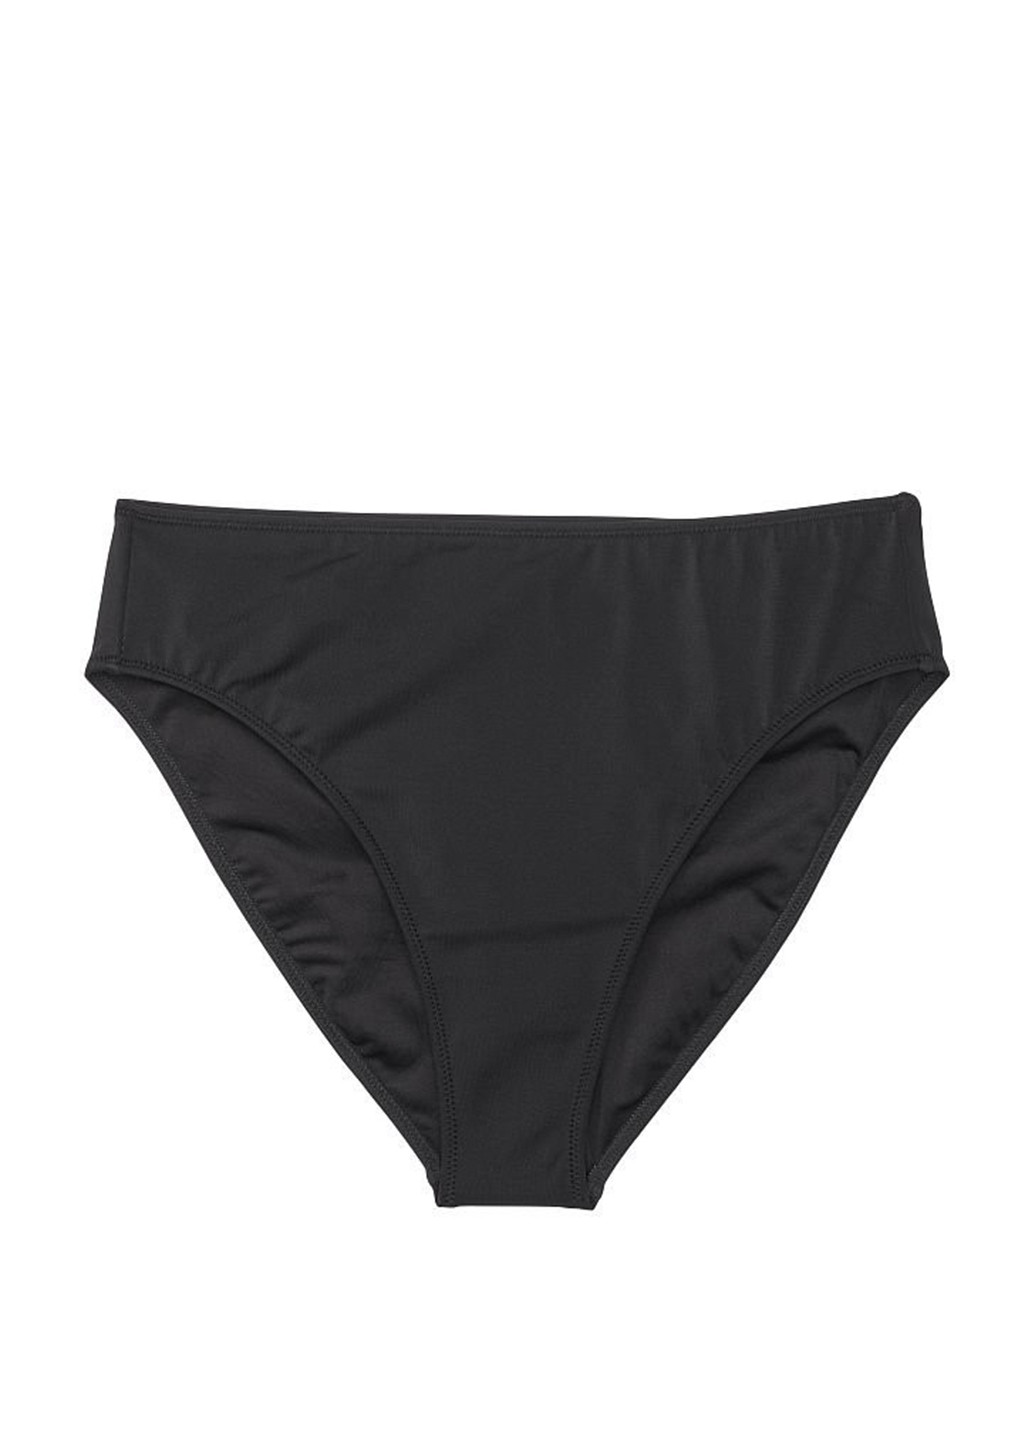 Черный летний купальник (лиф, трусы) раздельный, бандо Victoria's Secret